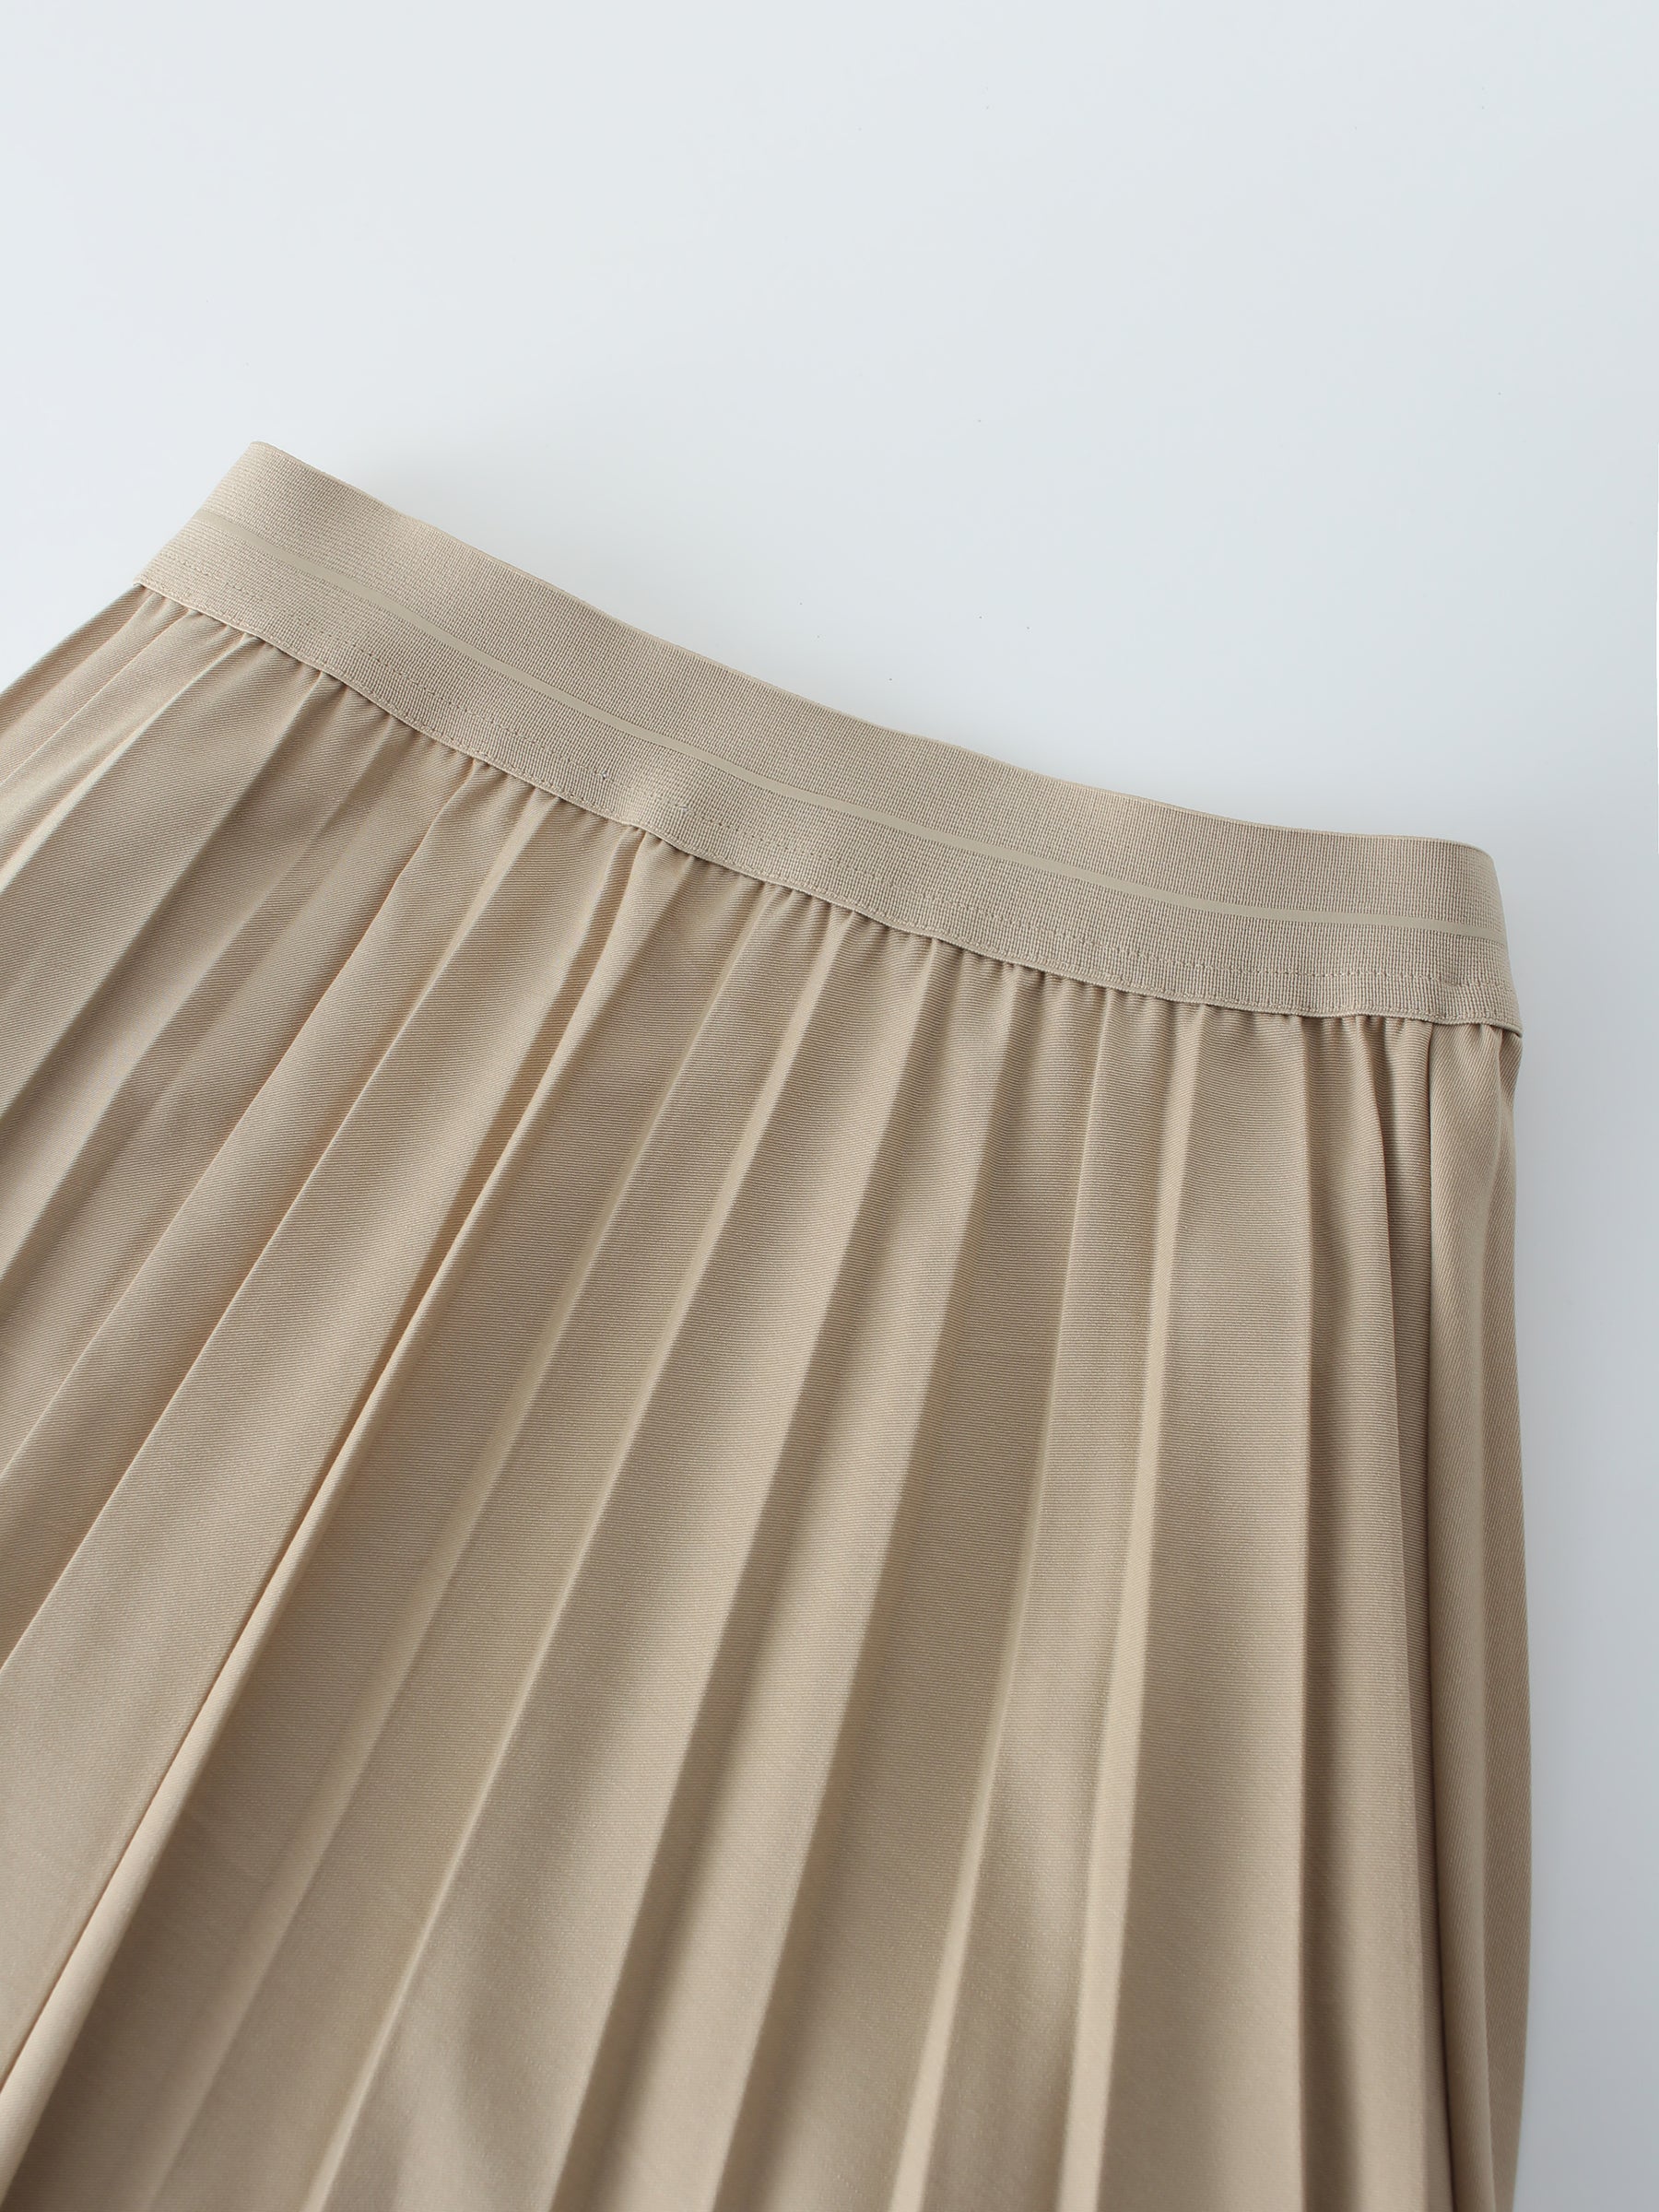 Pleated Skirt 37"-Medium Tan